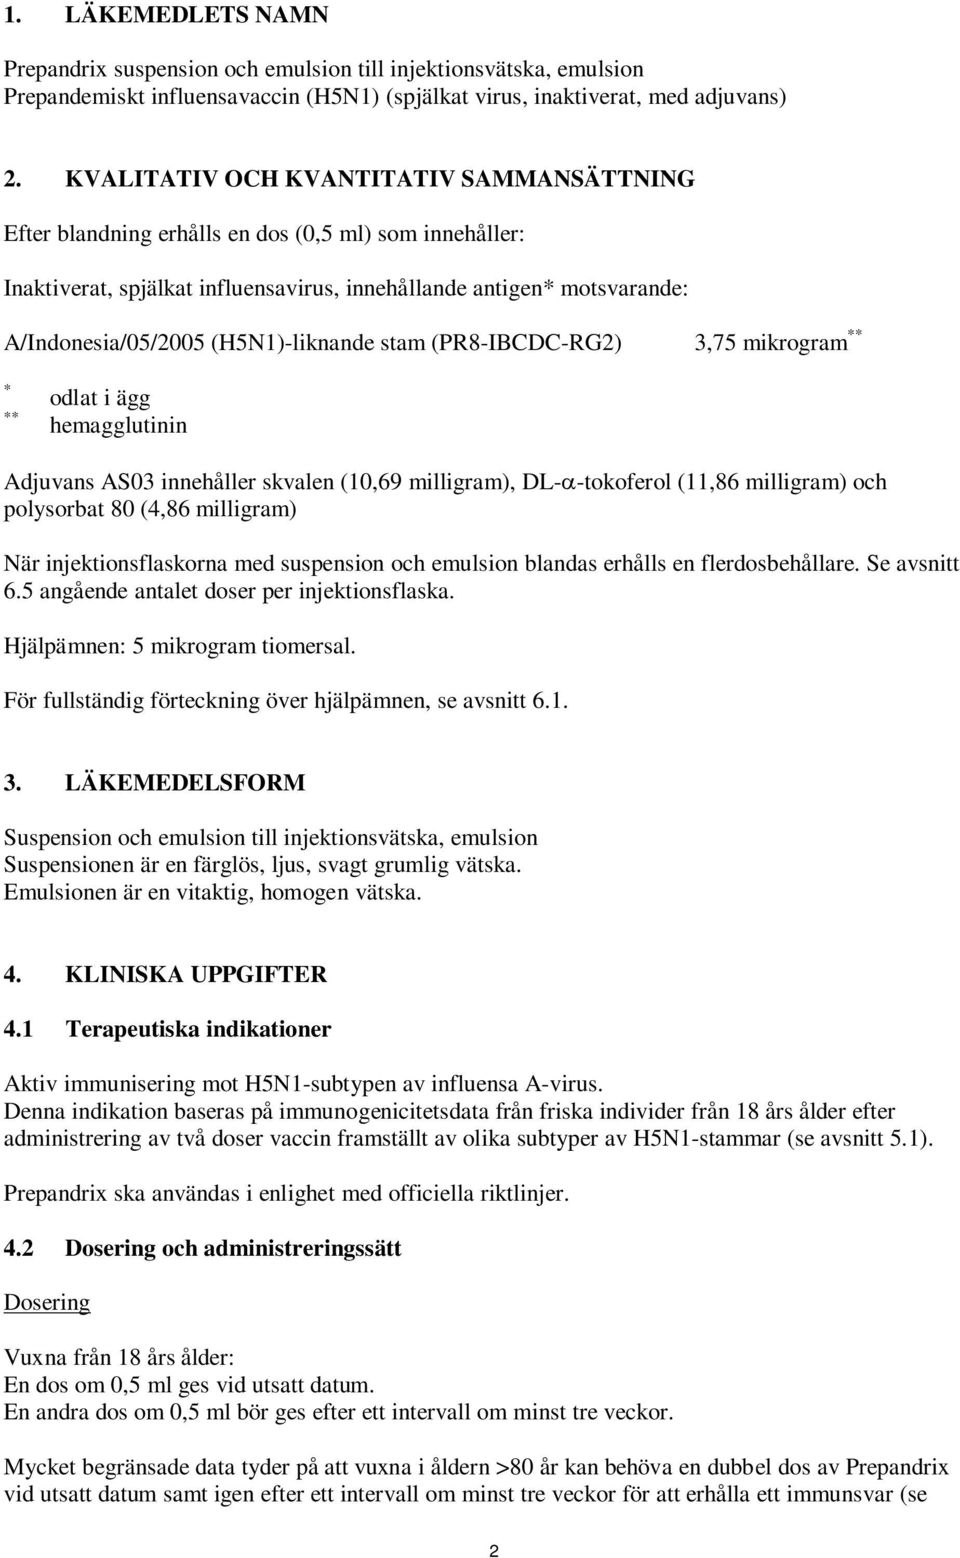 (H5N1)-liknande stam (PR8-IBCDC-RG2) 3,75 mikrogram ** * ** odlat i ägg hemagglutinin Adjuvans AS03 innehåller skvalen (10,69 milligram), DL-α-tokoferol (11,86 milligram) och polysorbat 80 (4,86